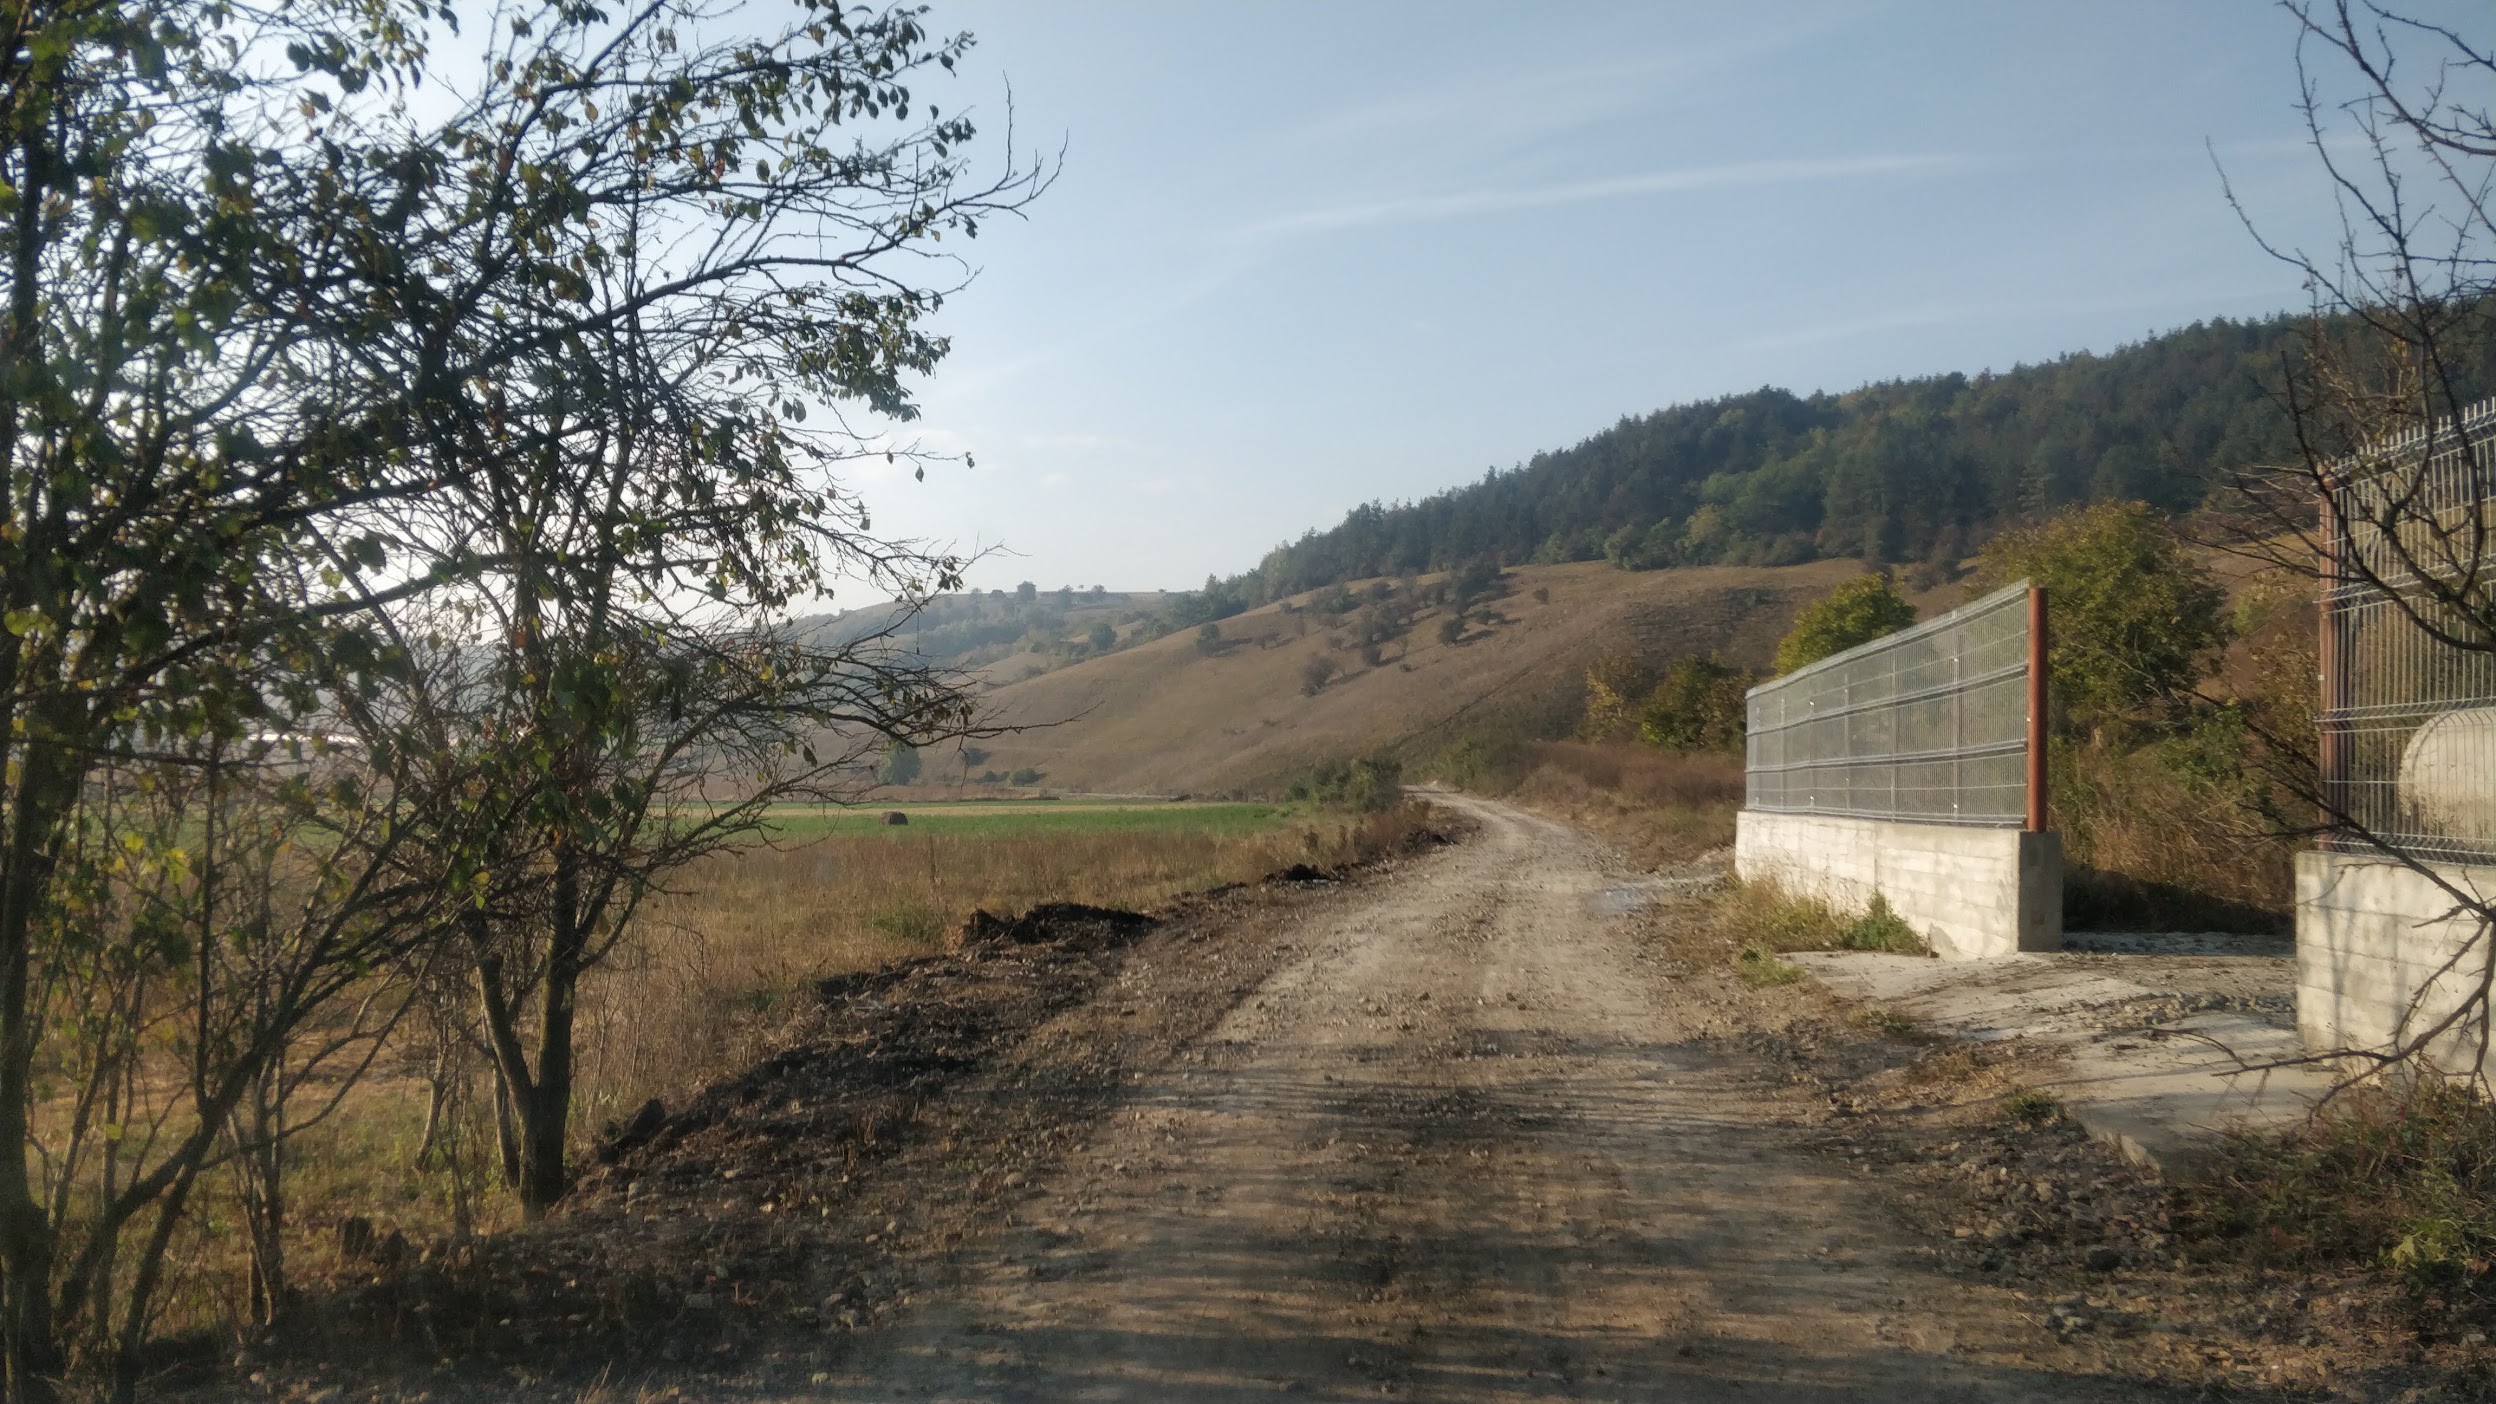 2019.09.27 - Anunț privind  decizia  etapei de încadrare APM „Racordarea rețelei de drumuri agricole modernizate la rețeaua rutiera de străzi in comuna Baciu, județul Cluj”